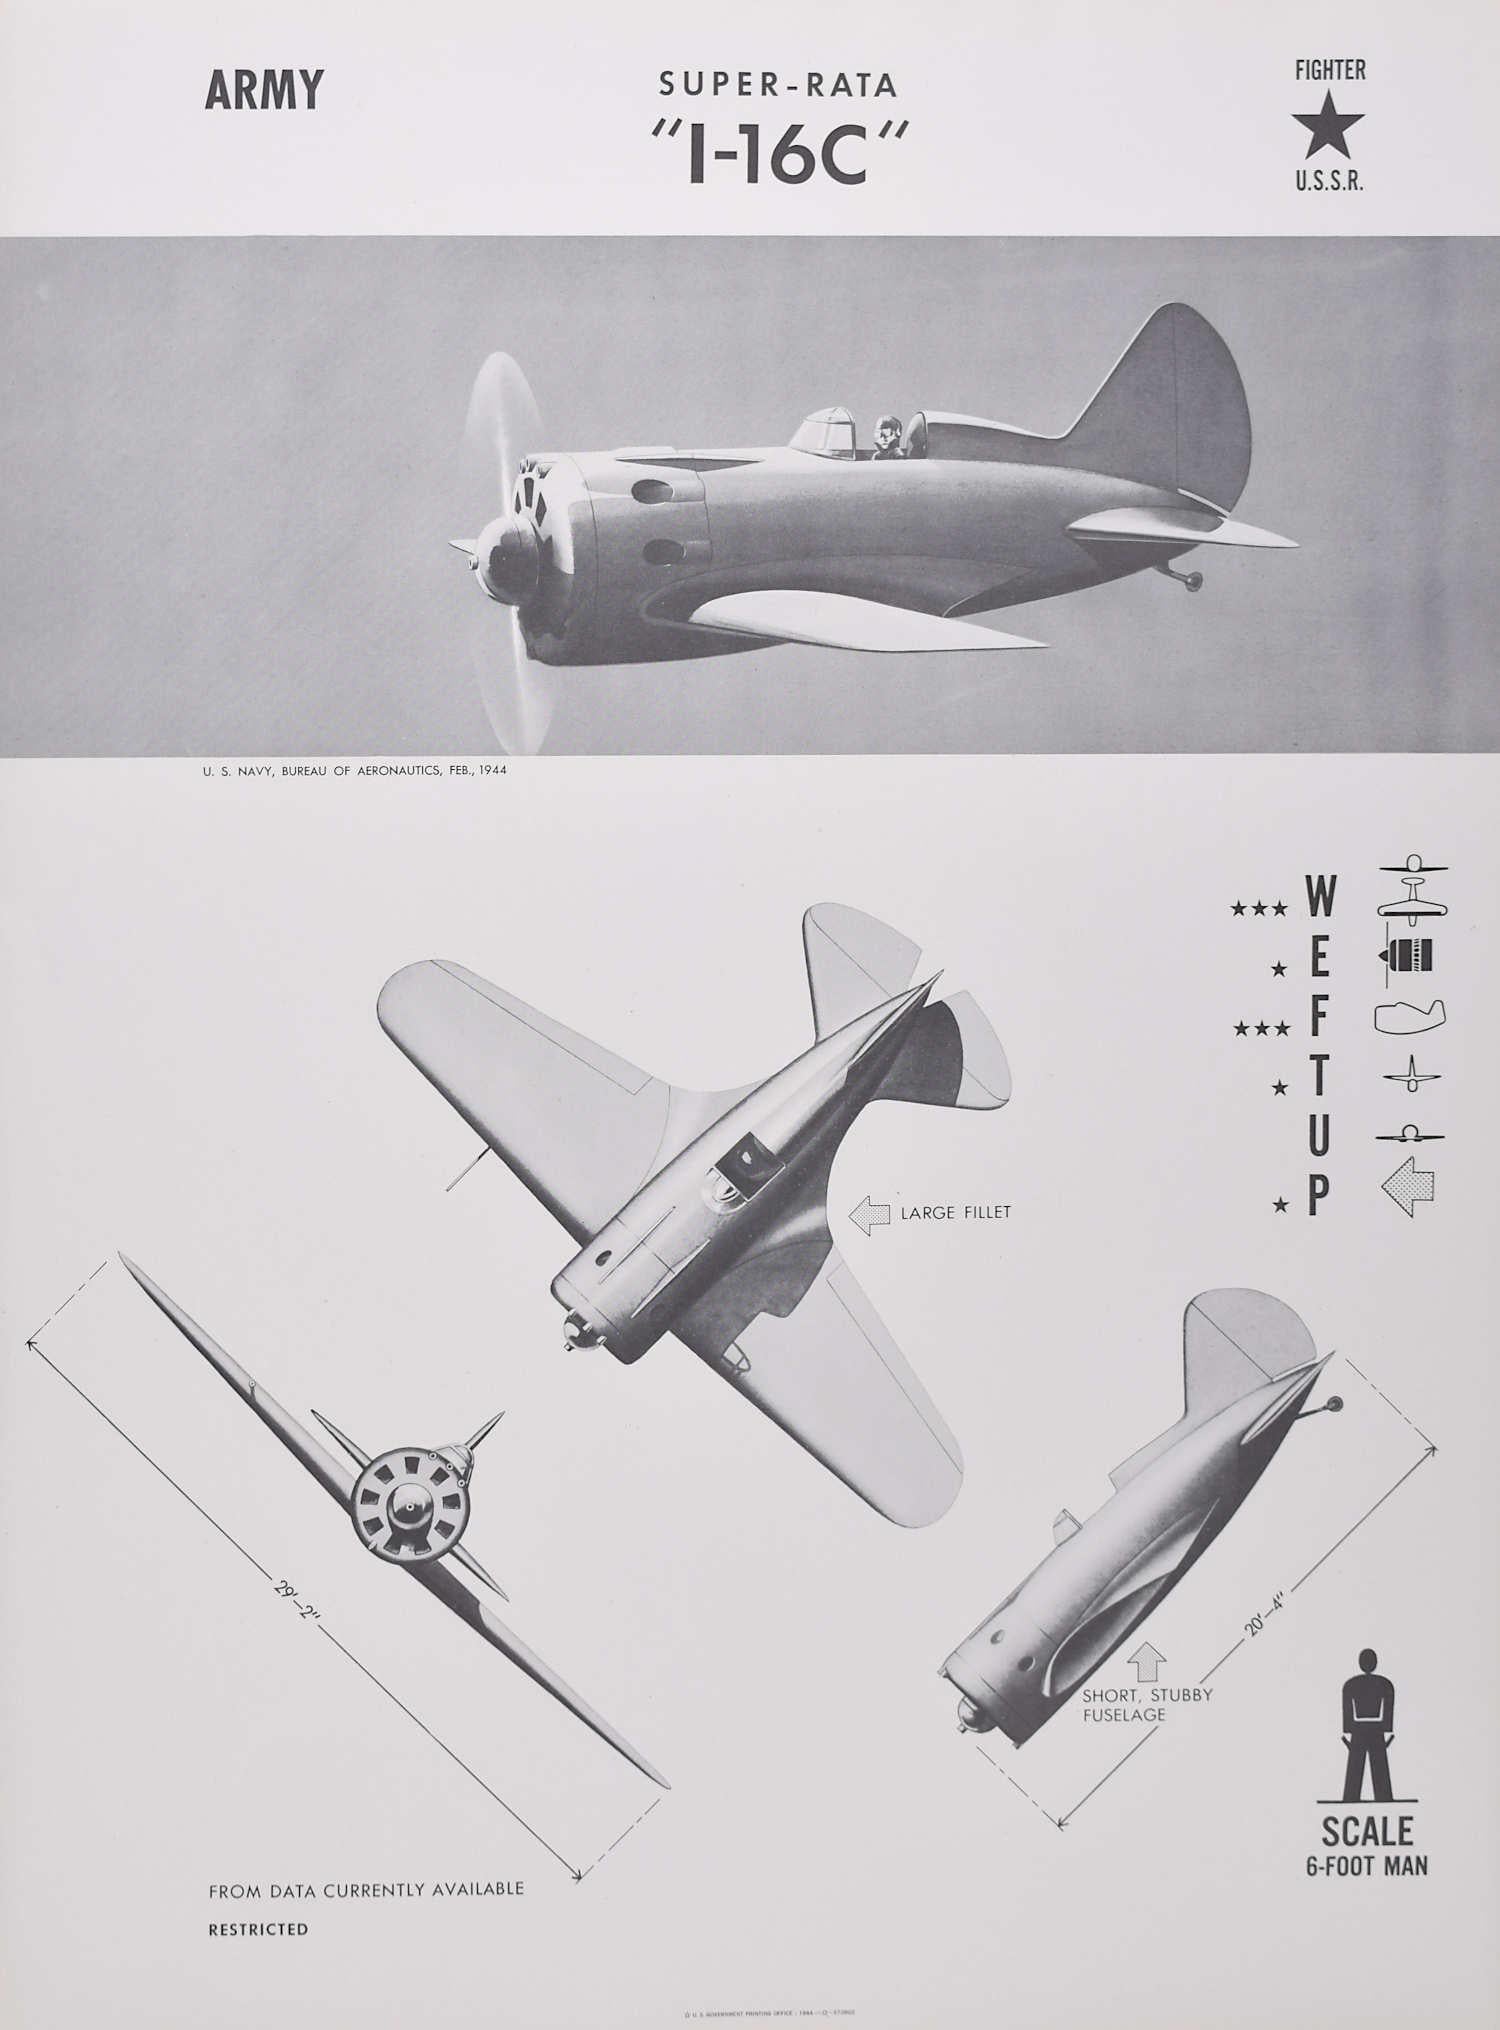 Affiche d'identification d'avions de chasseurs de l'URSS russes Super-Rata « I-16C » de 1944, seconde guerre mondiale - Print de Unknown